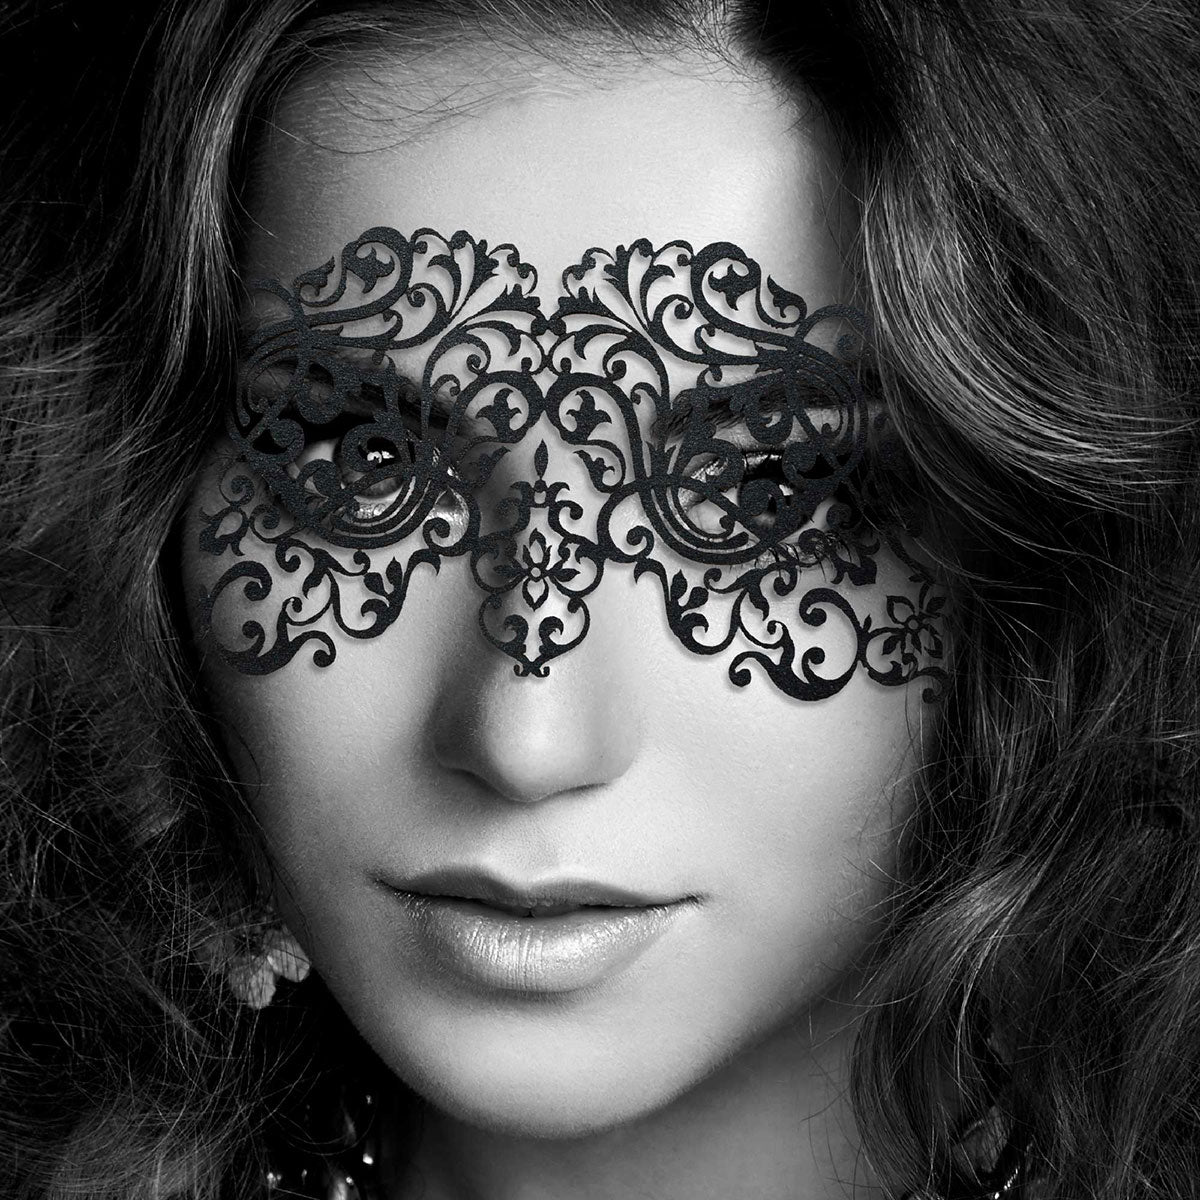 Bijoux Indiscrets Decal Eyemask - Dalila Intimates Adult Boutique